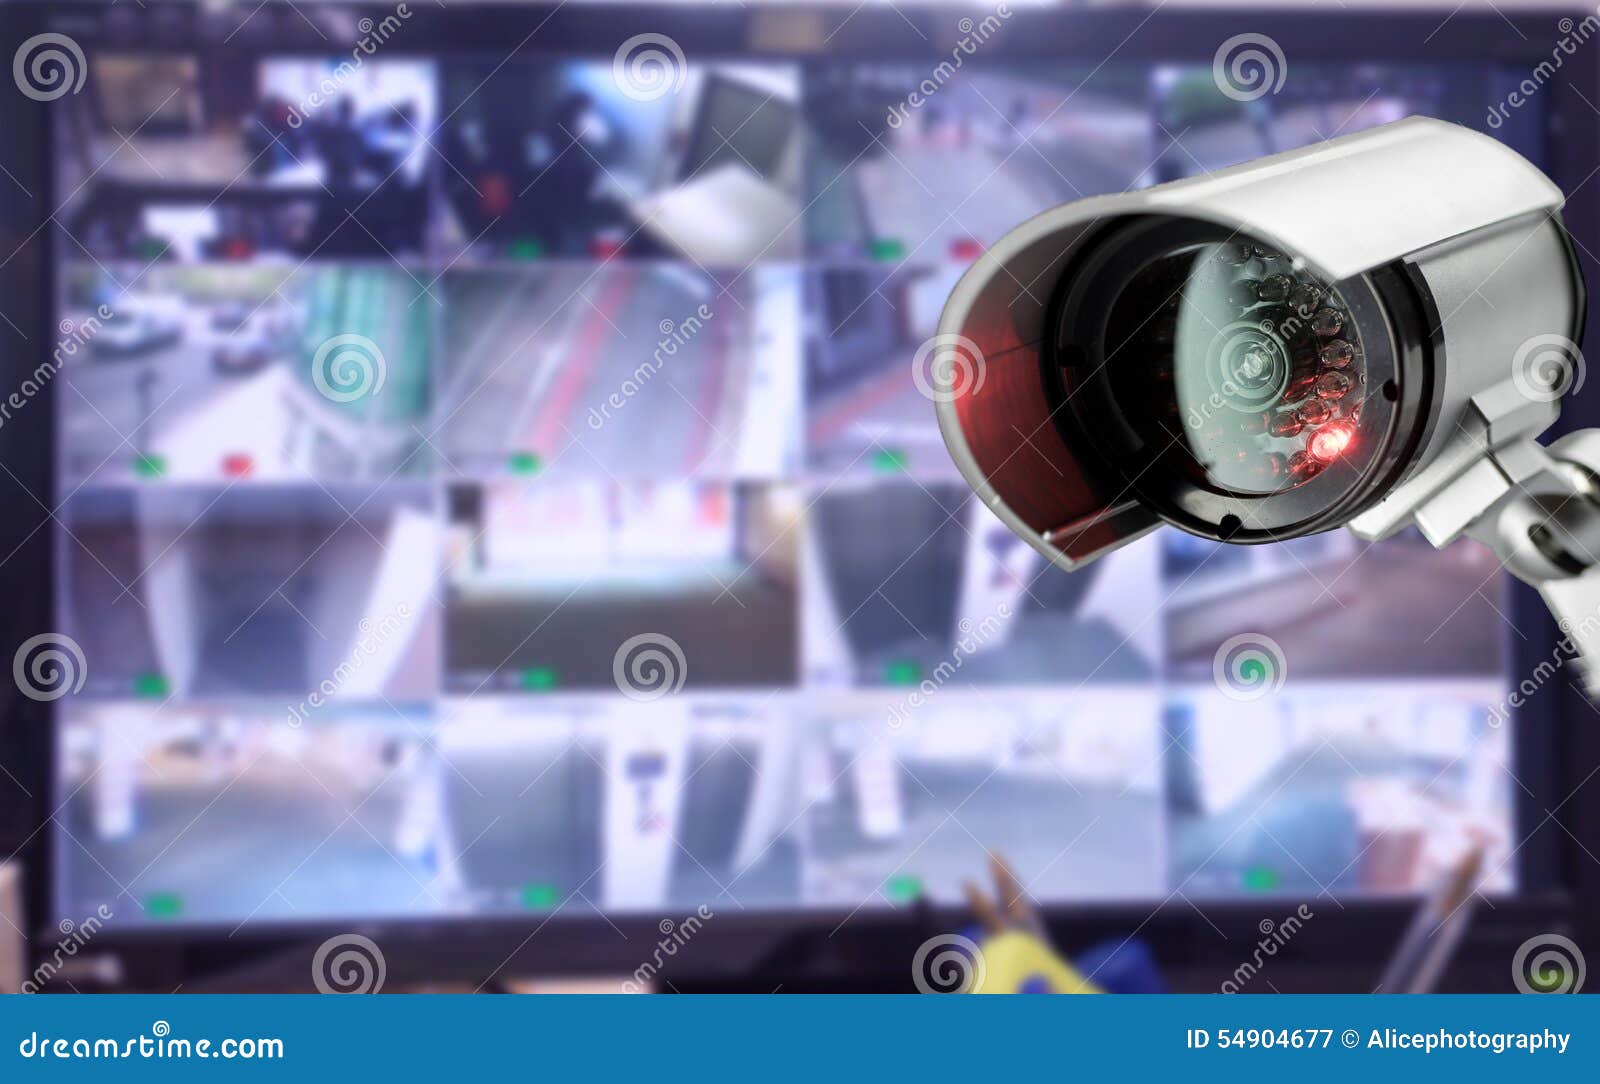 lanzamiento todo lo mejor Frontera Monitor De La Cámara De Seguridad Del CCTV En El Edificio De Oficinas  Imagen de archivo - Imagen de protector, control: 54904677